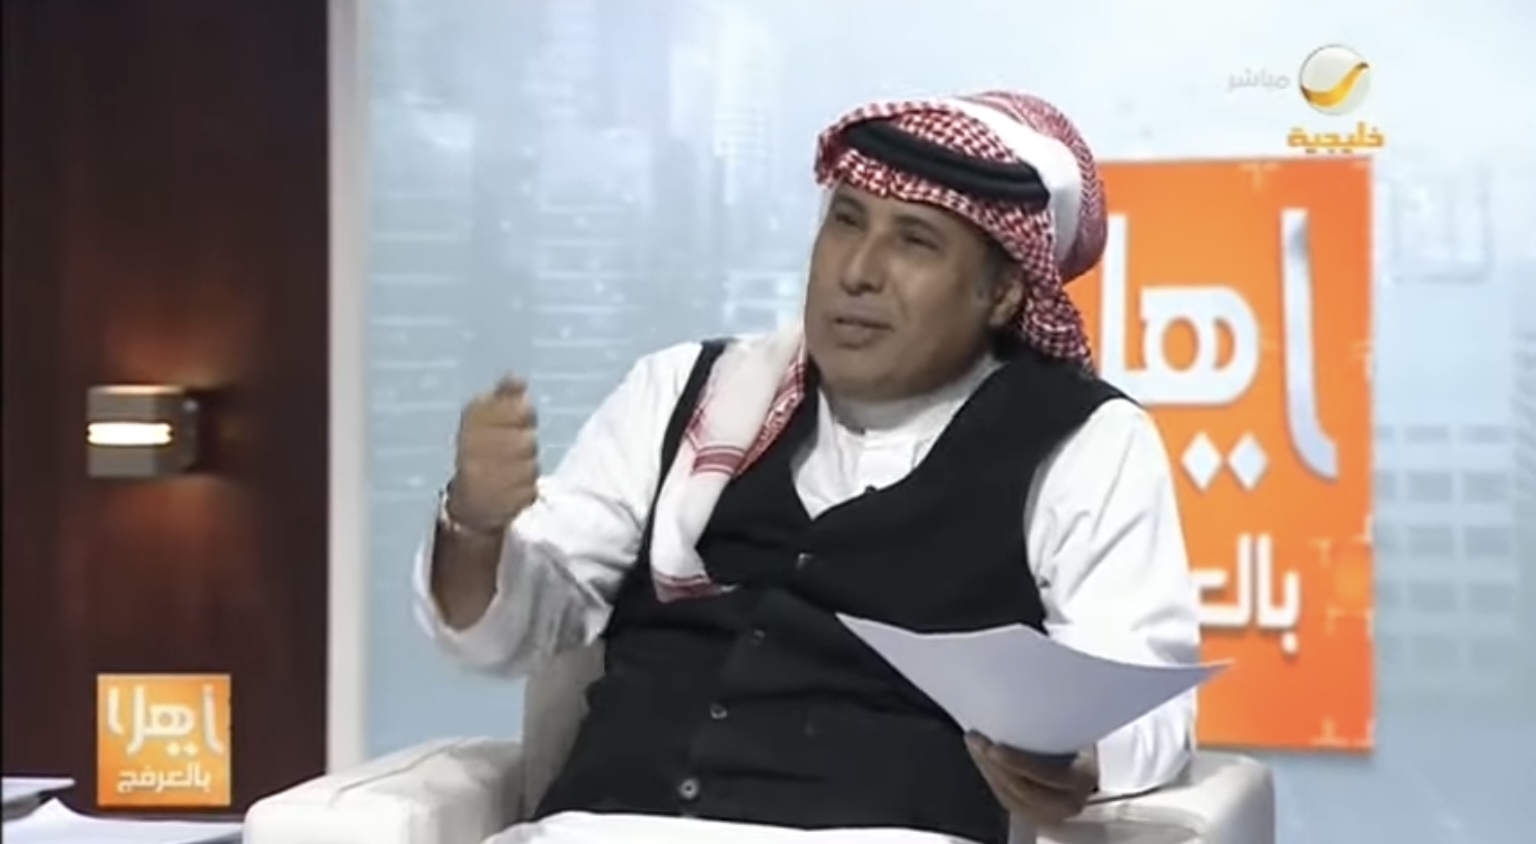 العرفج: الشوقر دادي موجود في السعودية كزواج دوافعه مادية